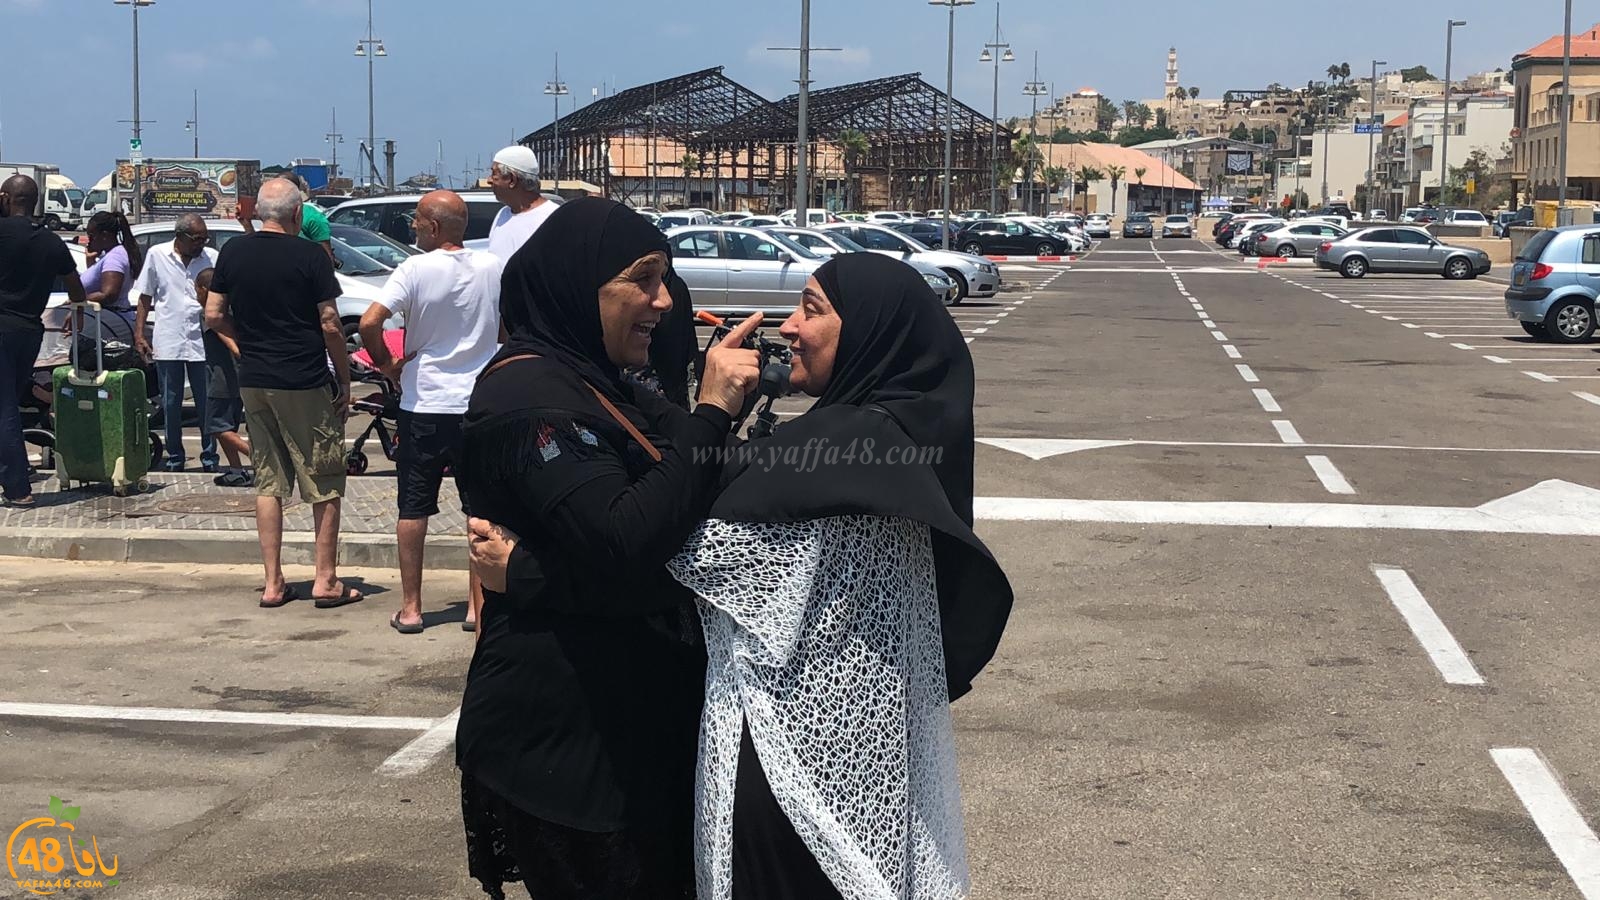  بالصور: إنطلاق حجاج بيت الله الحرام من مدينة يافا إلى الديار الحجازية